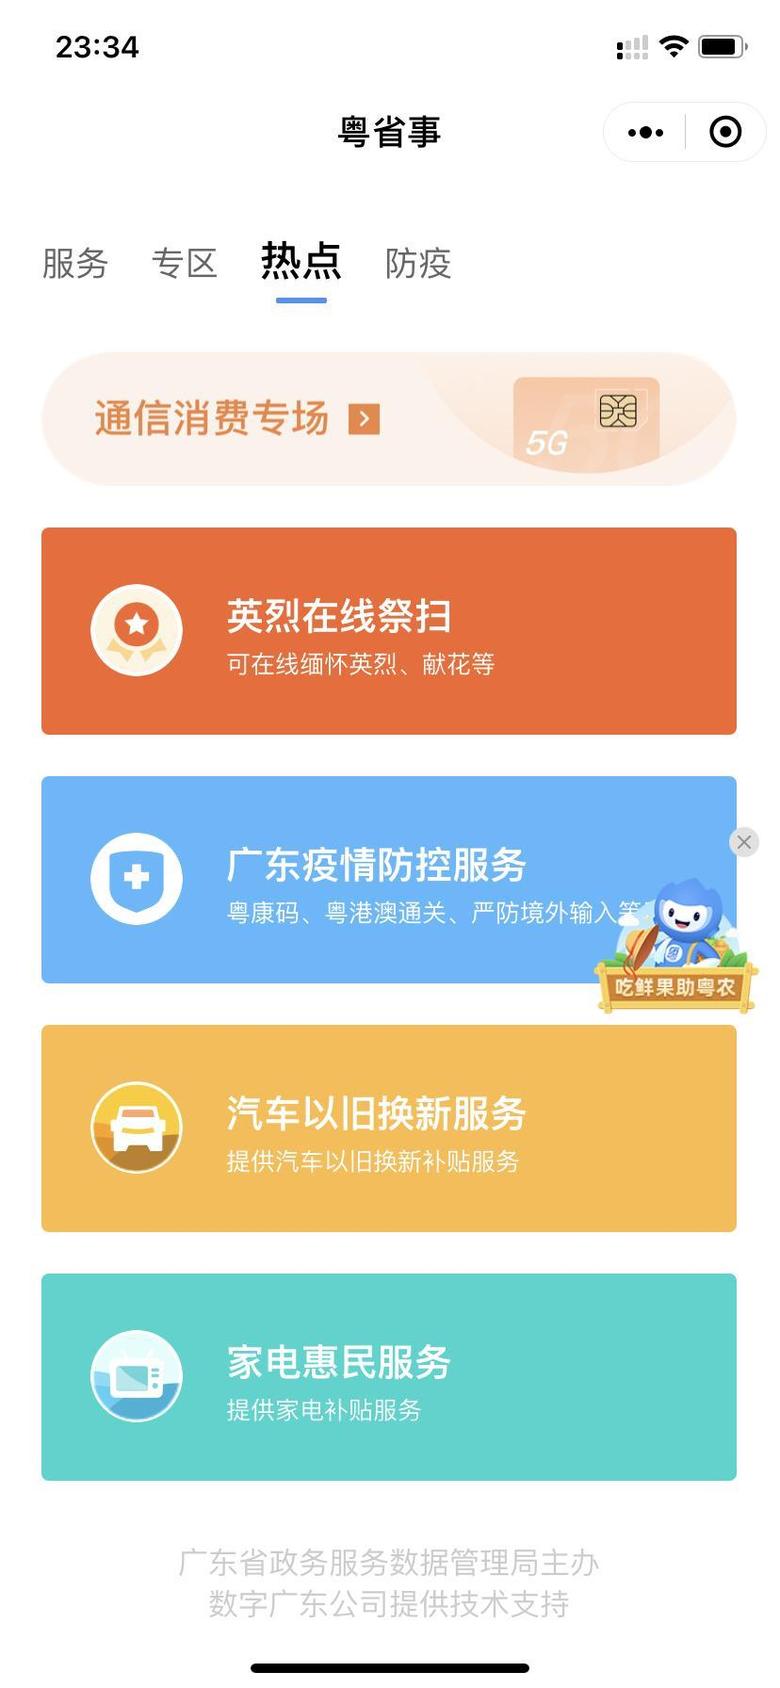 凡尔赛c5 x 广州的今天都收到“汽车以旧换新”短信吧？但雪铁龙不在厂家目录中。5千到底要不要呢